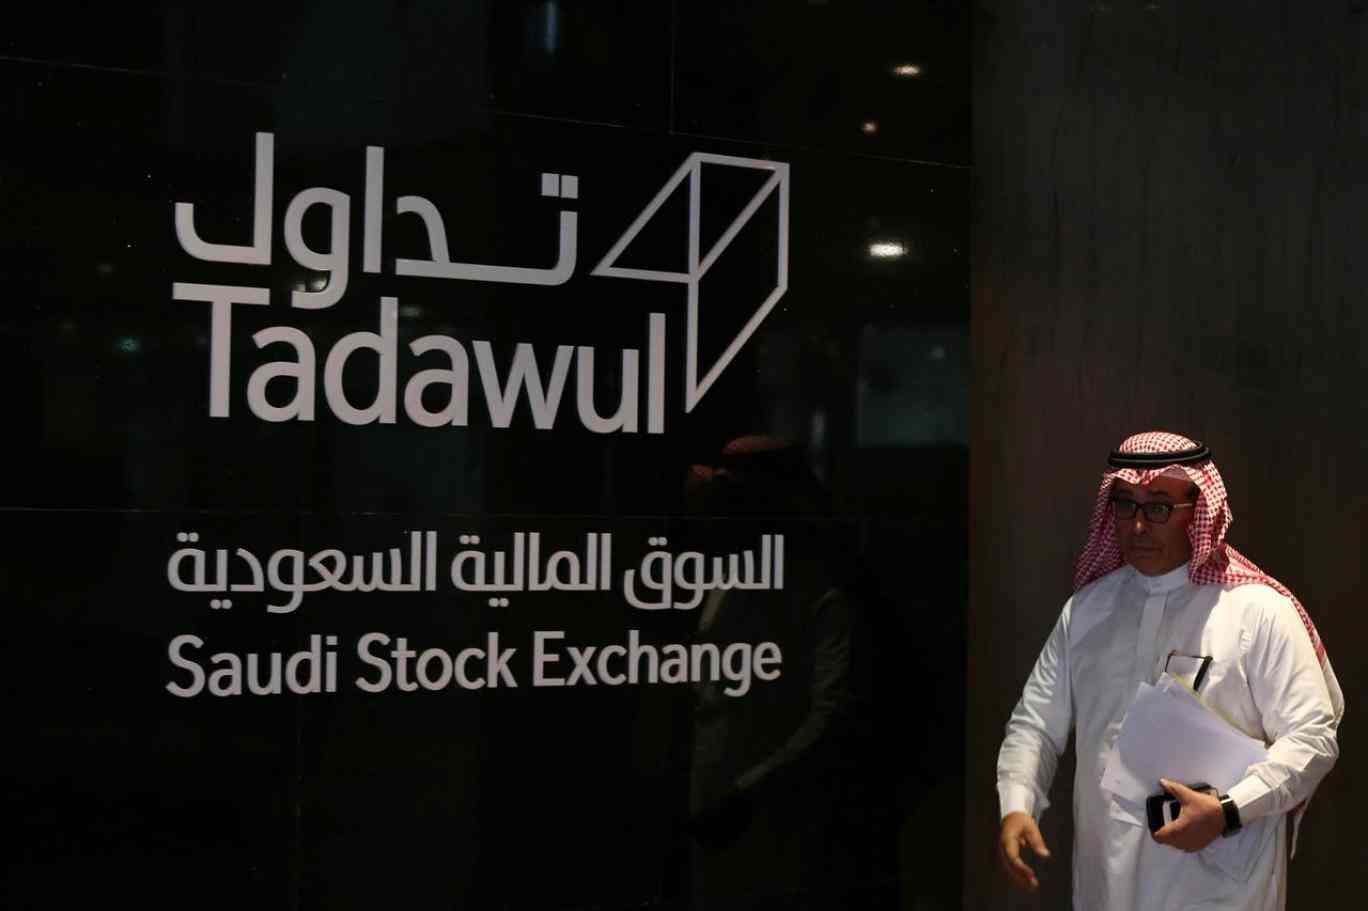 سوق الأسهم السعودية تشهد بدء تداول أسهم أملاك العالمية الاقتصادي العالم اليوم البيان